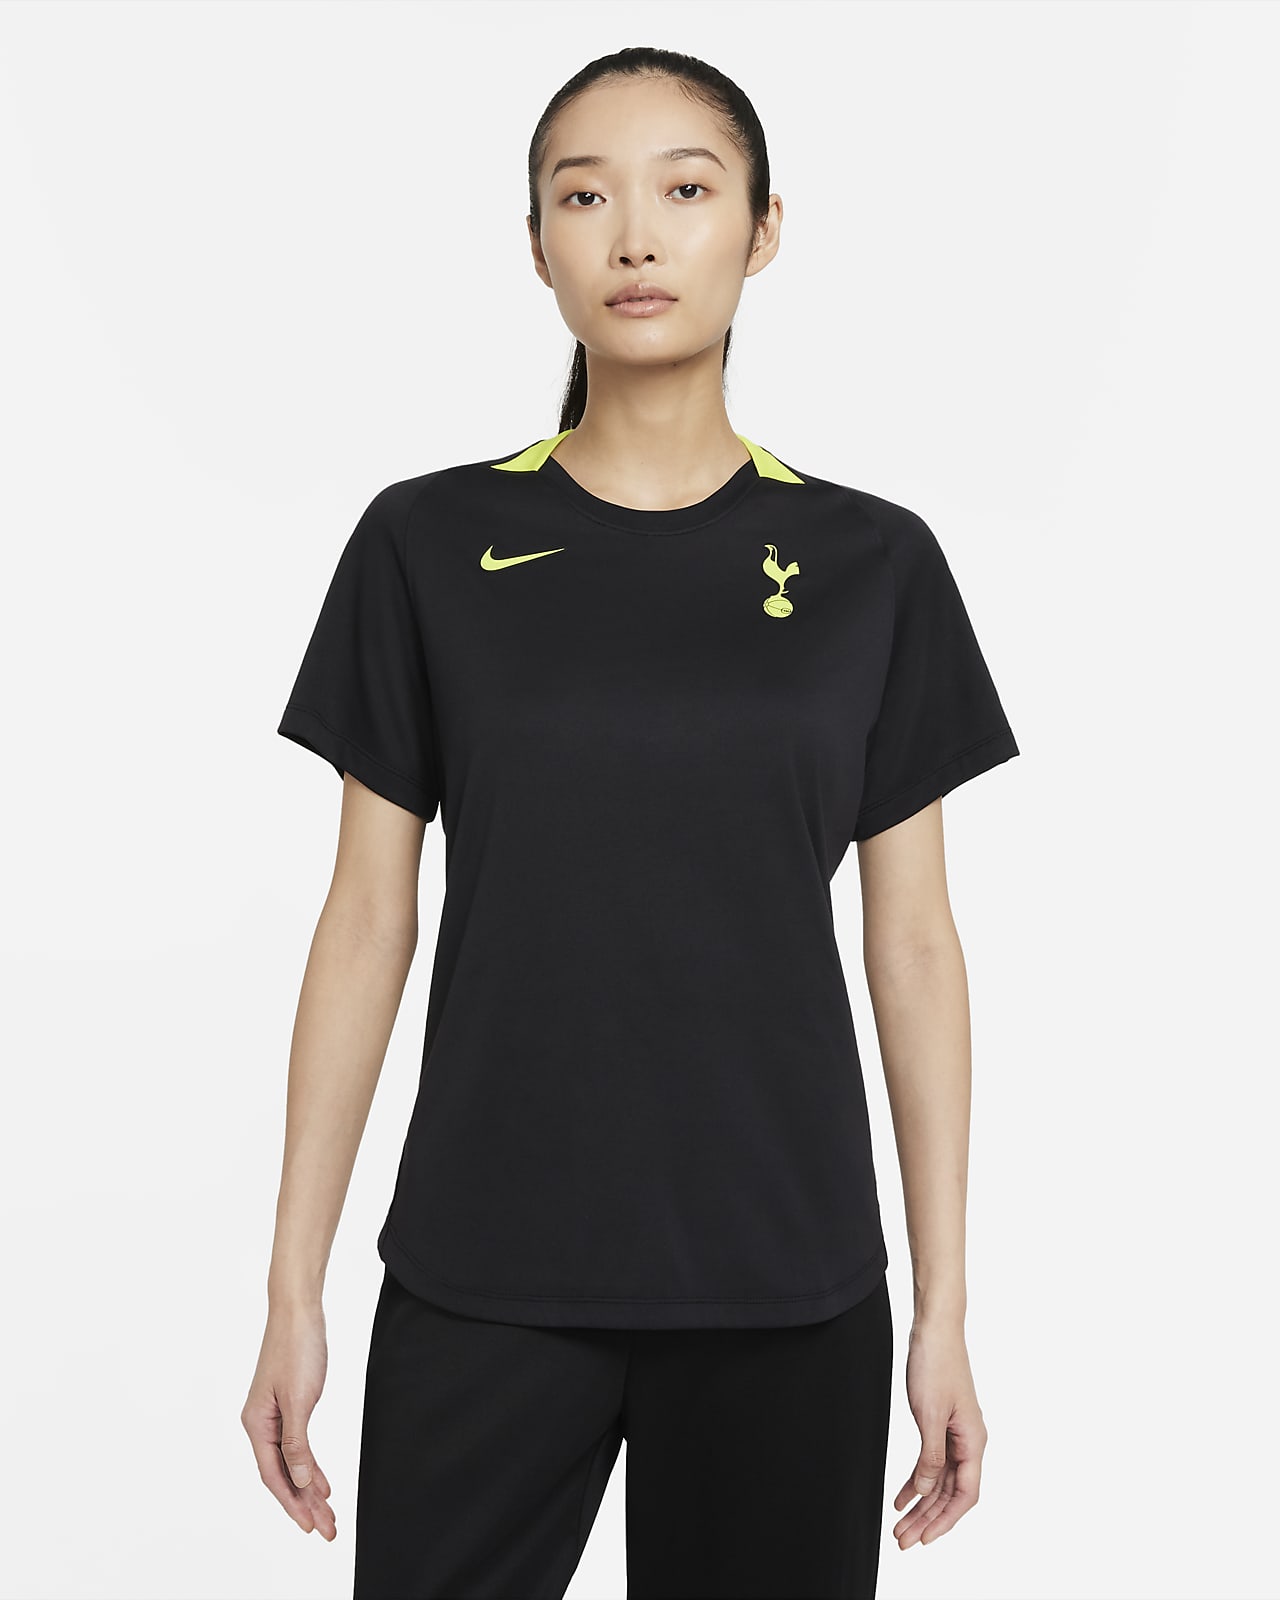 Tottenham Hotspur Women's Nike Dri-FIT Short-Sleeve Football Top. Nike NL